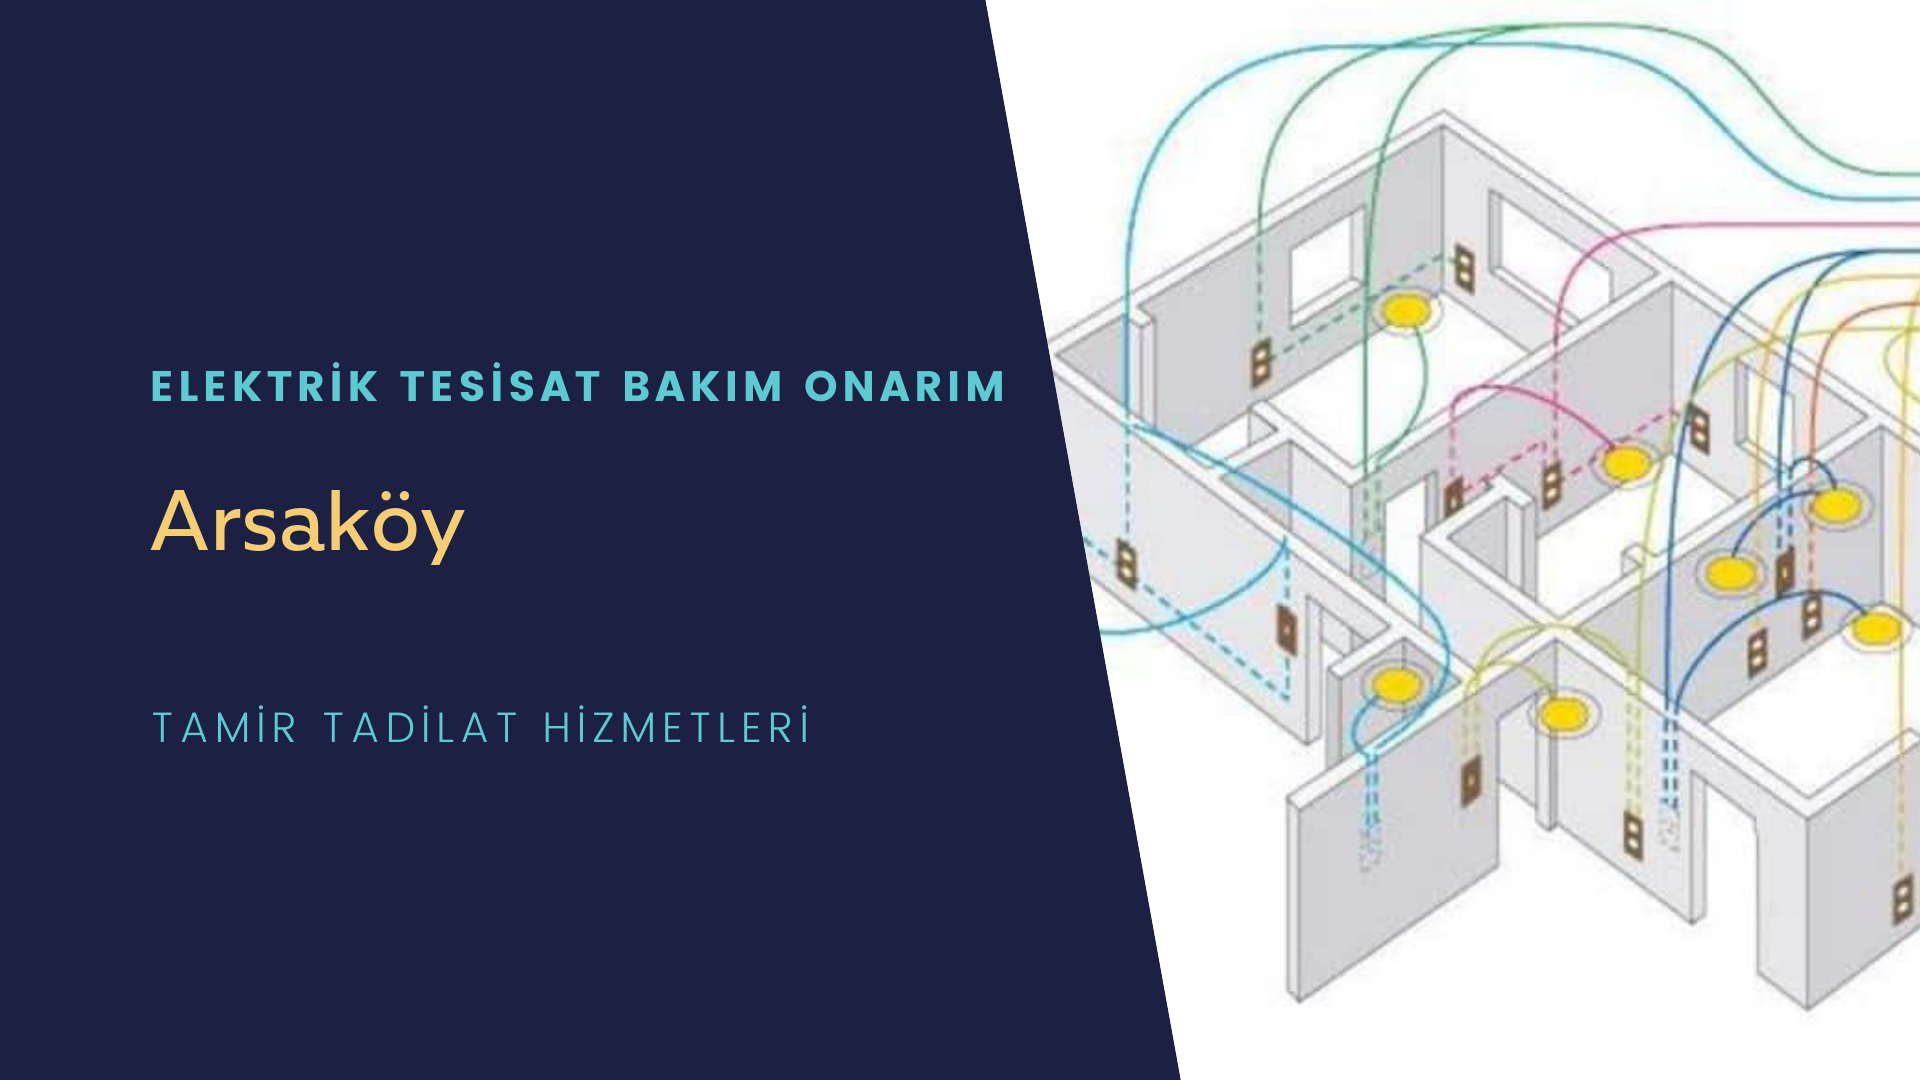 Arsaköy'de elektrik tesisatı ustalarımı arıyorsunuz doğru adrestenizi Arsaköy elektrik tesisatı ustalarımız 7/24 sizlere hizmet vermekten mutluluk duyar.